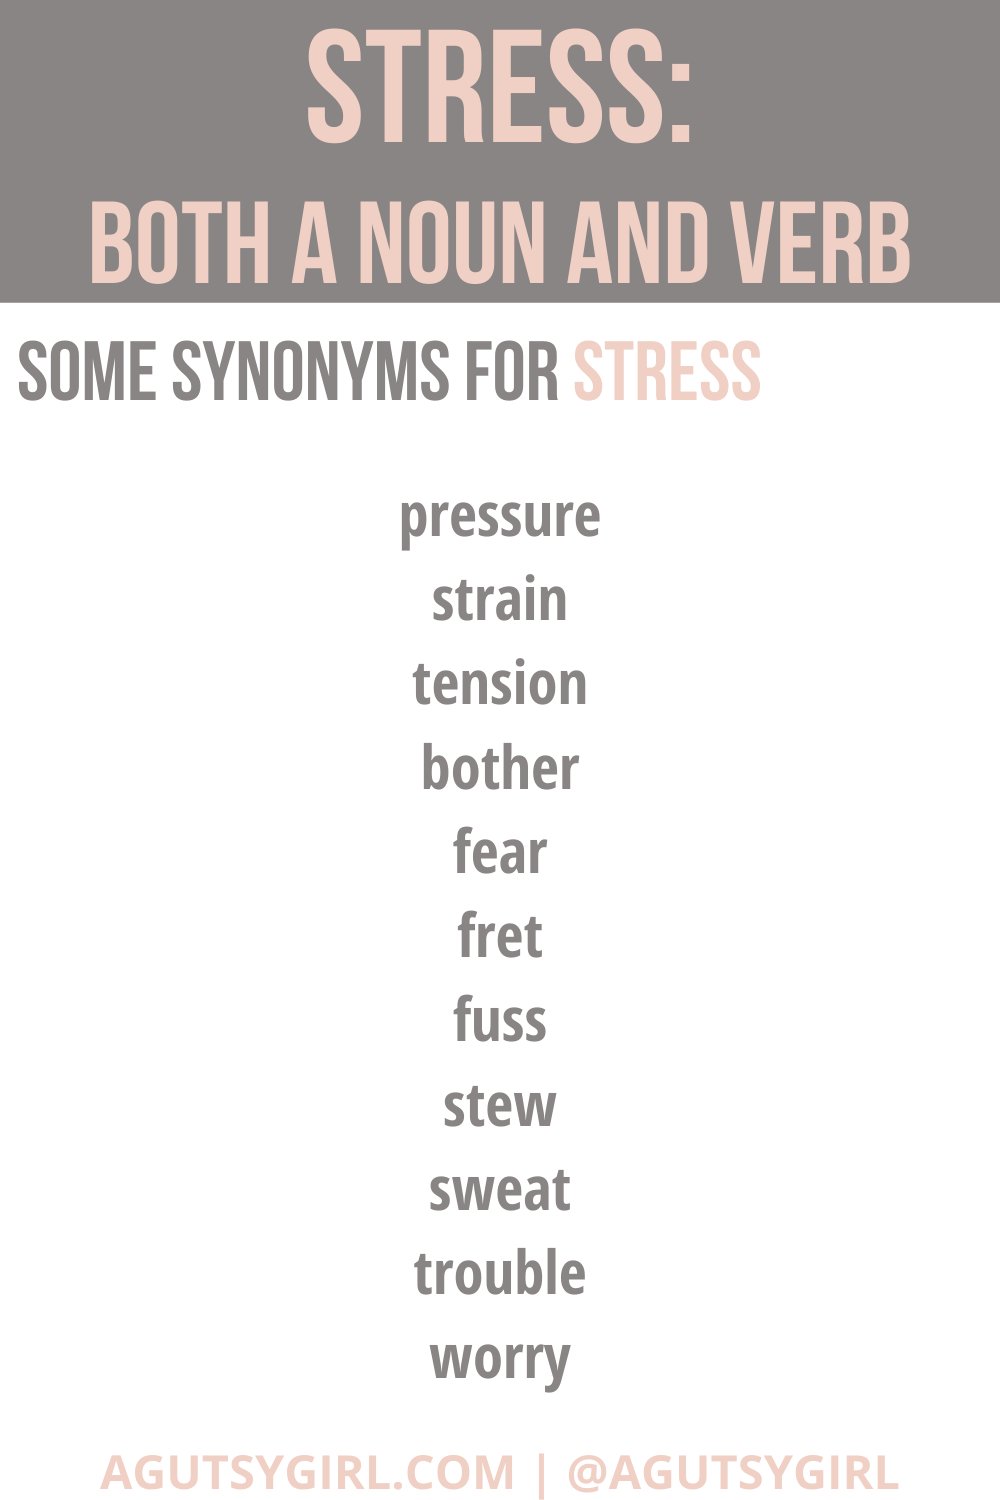 Stress synonym verb noun symptoms agutsygirl.com #stresssymptoms #stress #stressed